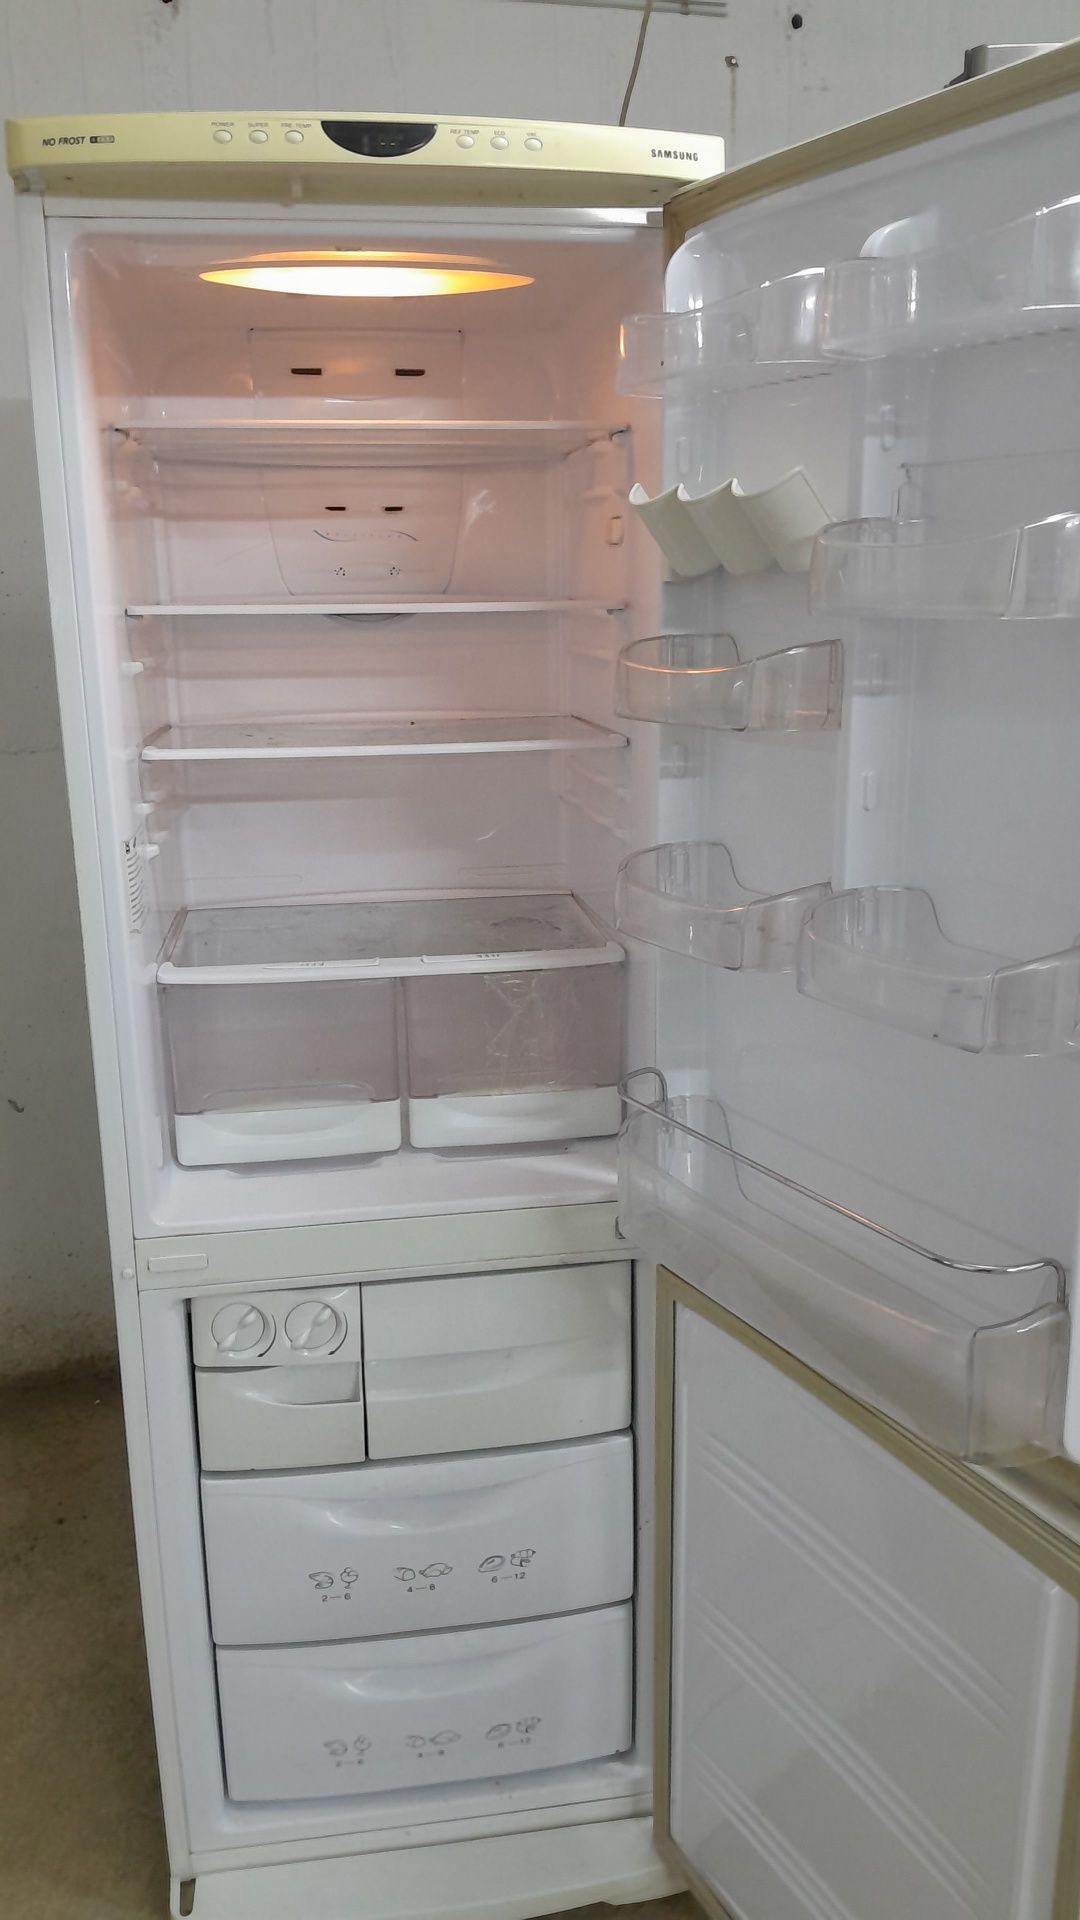 Холодильник ДОставка от45000до  разные есть ноу фрост отлично морозят